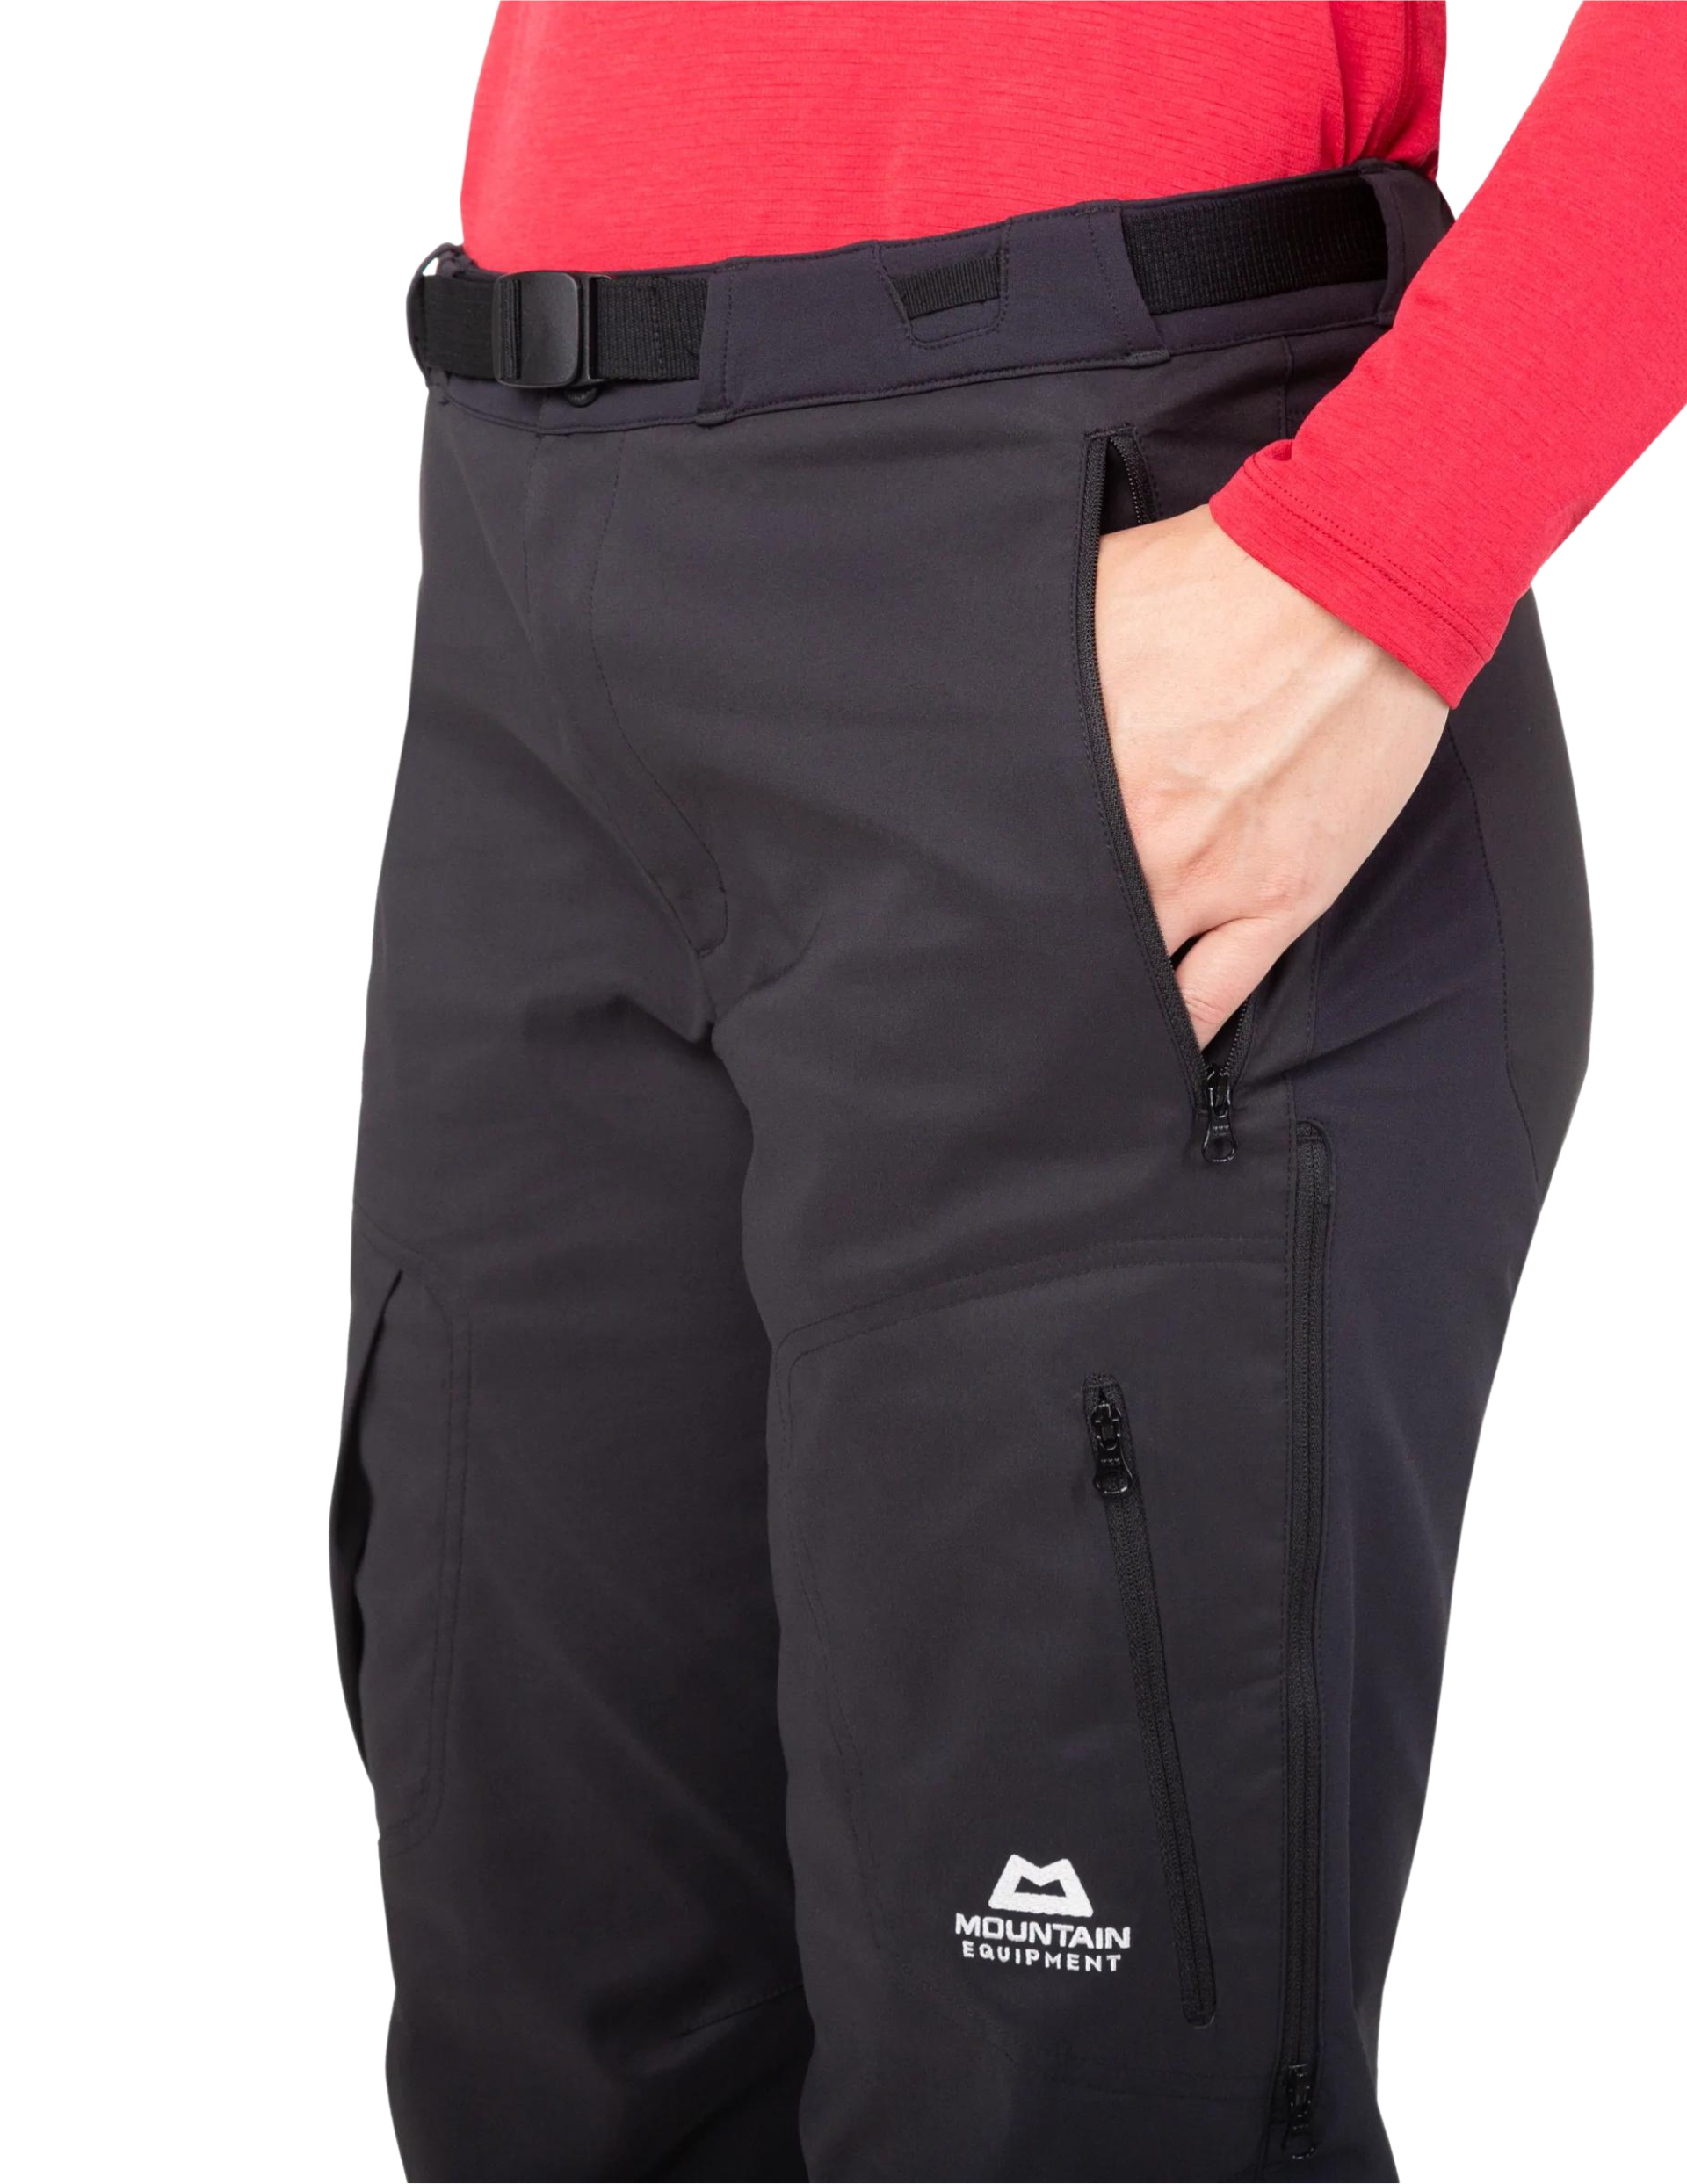 Pantalon de ski de rando Mountain Equipment Epic : poches zippées et ventilations latérales